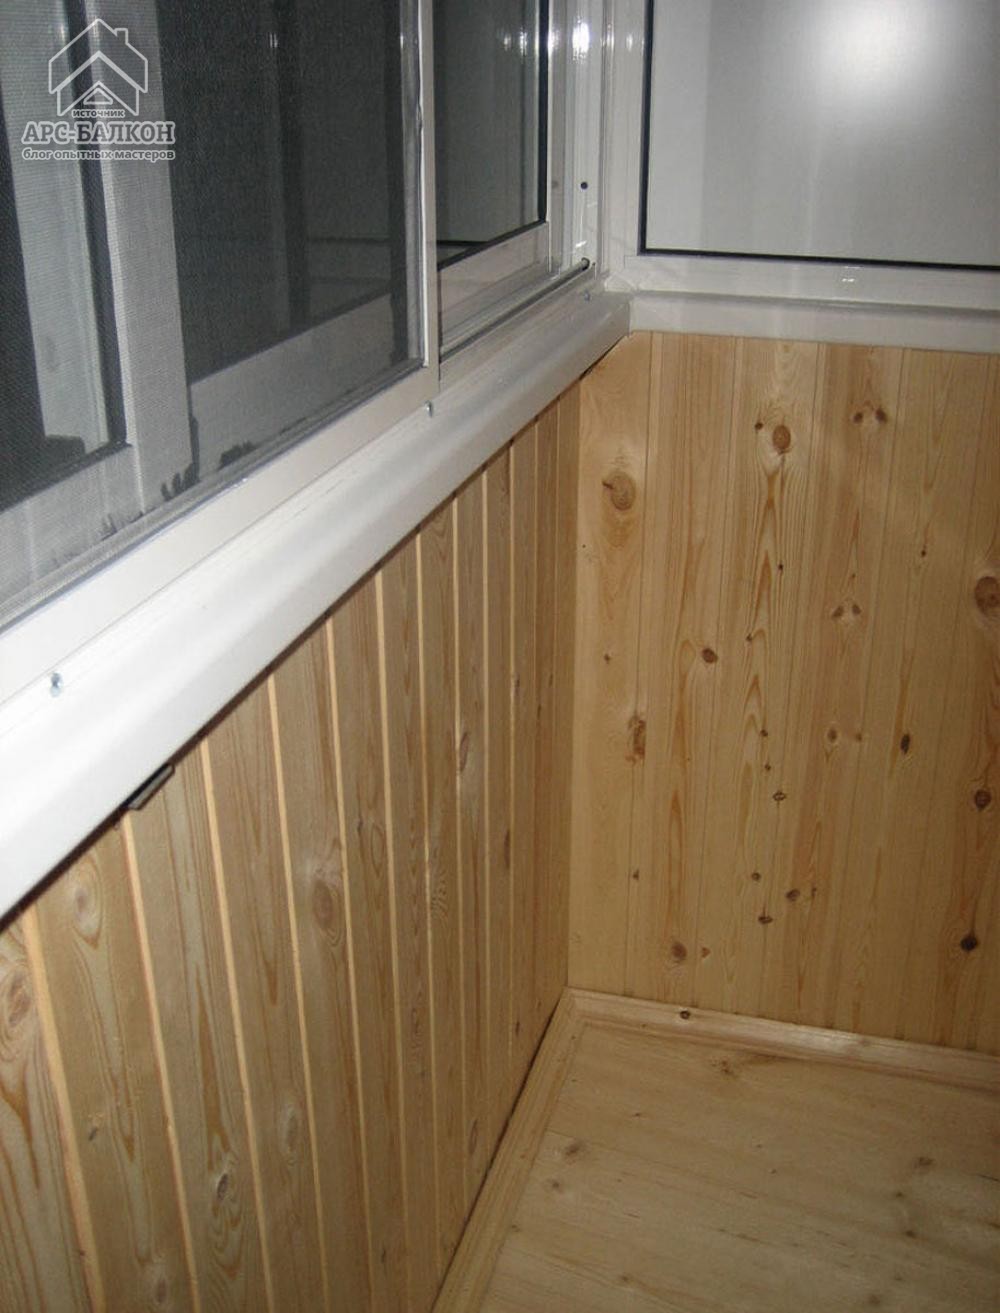 Обшивка балкона вагонкой фото: Обшивка балкона вагонкой - инструкция с фото, описанием, примерами и видео